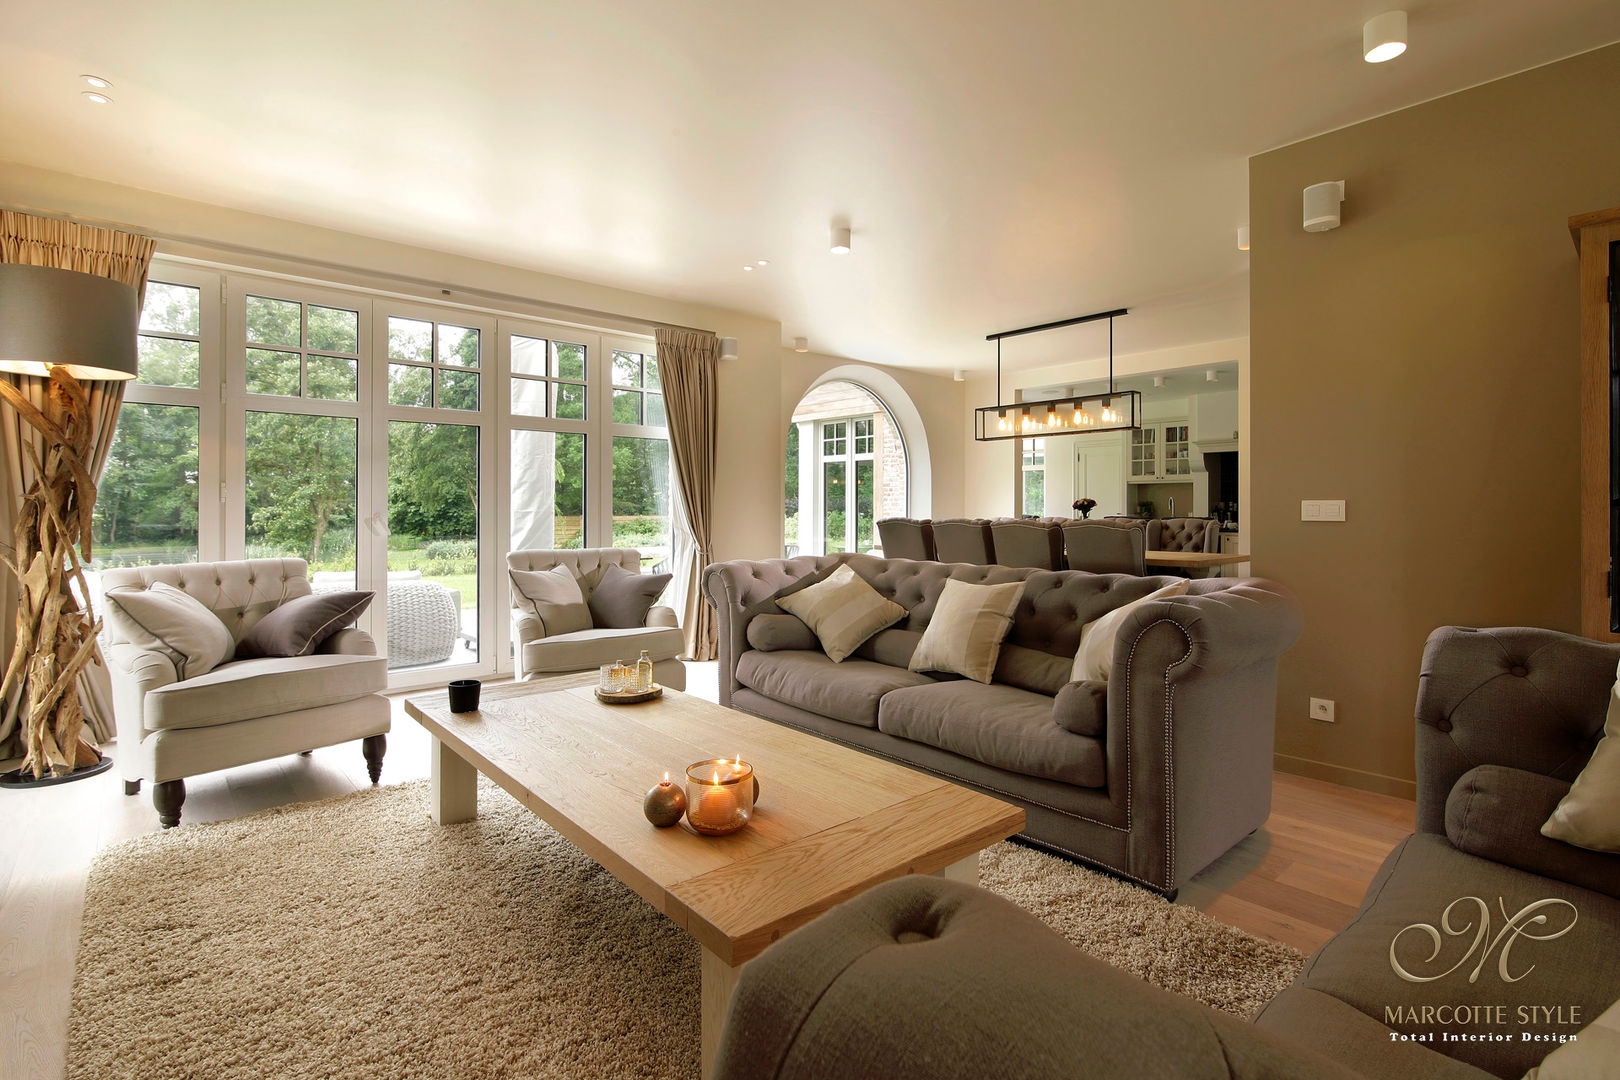 Aanbouw deluxe: zonwering & schuifpui voor aangename sfeer, Marcotte Style Marcotte Style Country style living room